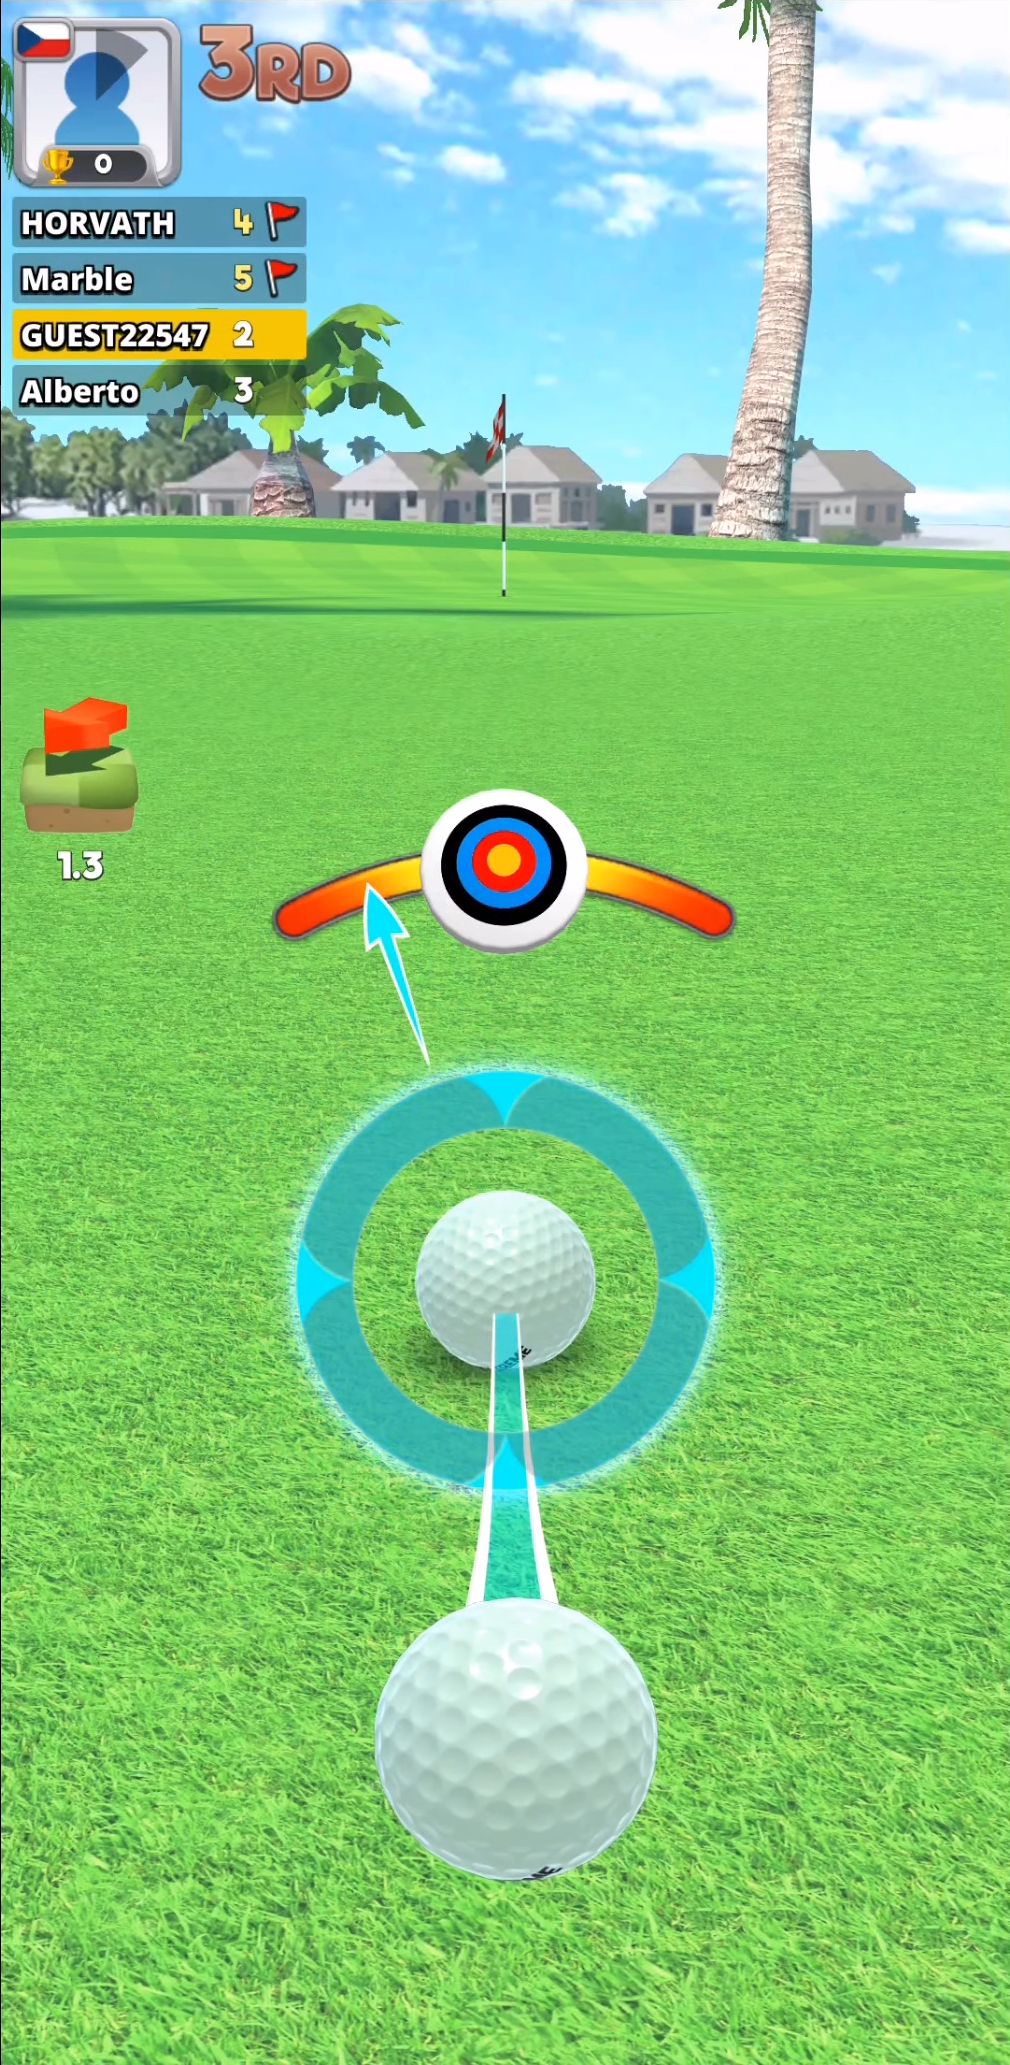 Extreme Golf - 4 Player Battle capture d'écran 1